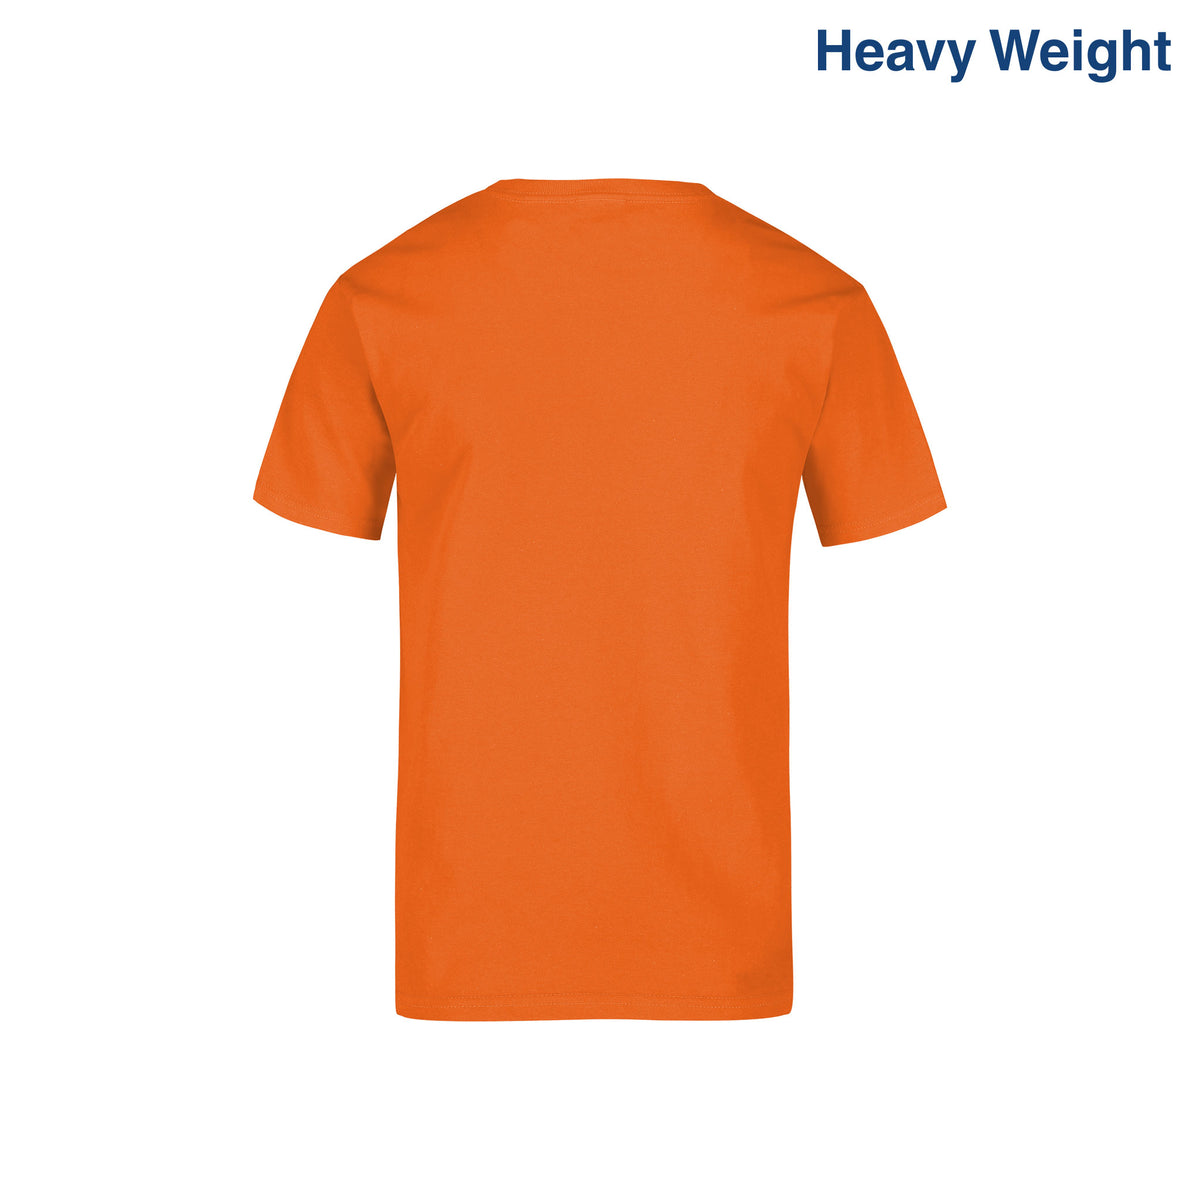 Youth’s Heavy Weight Crew Neck Short Sleeve T-Shirt (Orange) – Yazbek ...